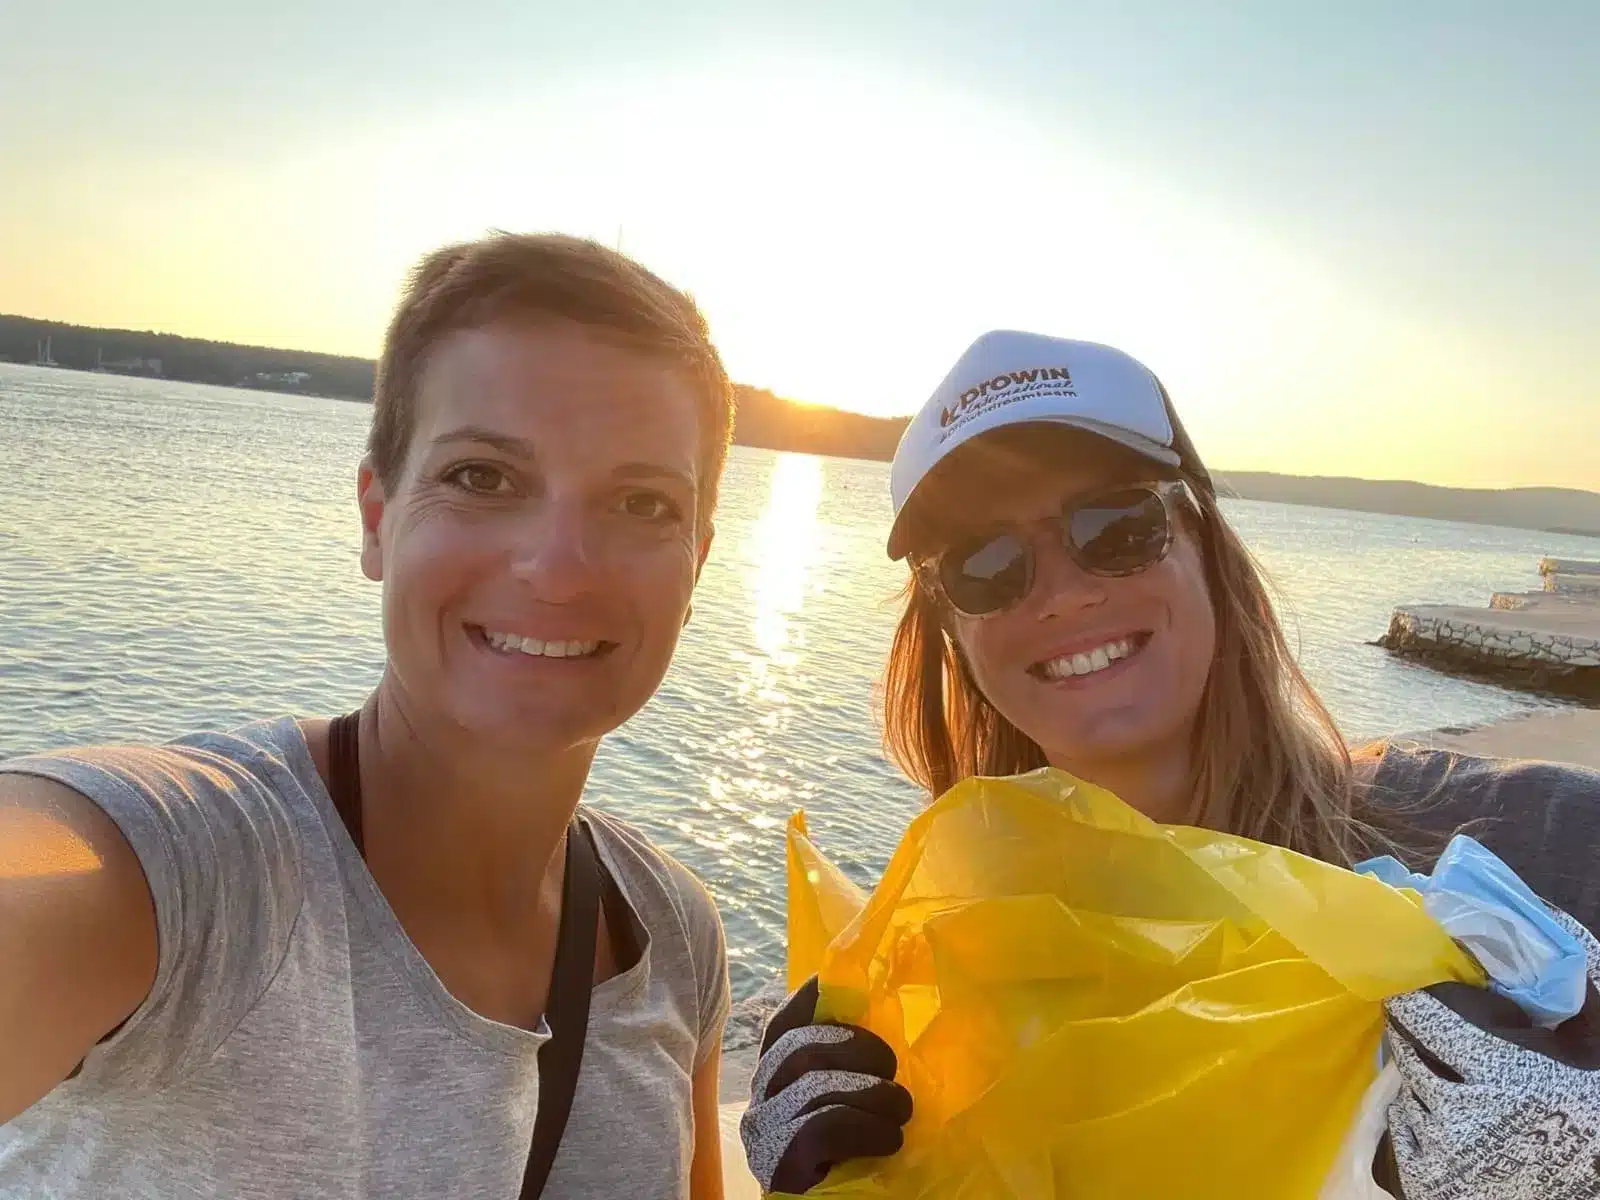 Zwei Frauen lächeln für ein Selfie mit einem See im Hintergrund bei Sonnenuntergang. Eine trägt eine Mütze und eine Sonnenbrille und hält einen gelben Müllsack in der Hand, möglicherweise nach einer Reinigungsaktion beim Segeln.